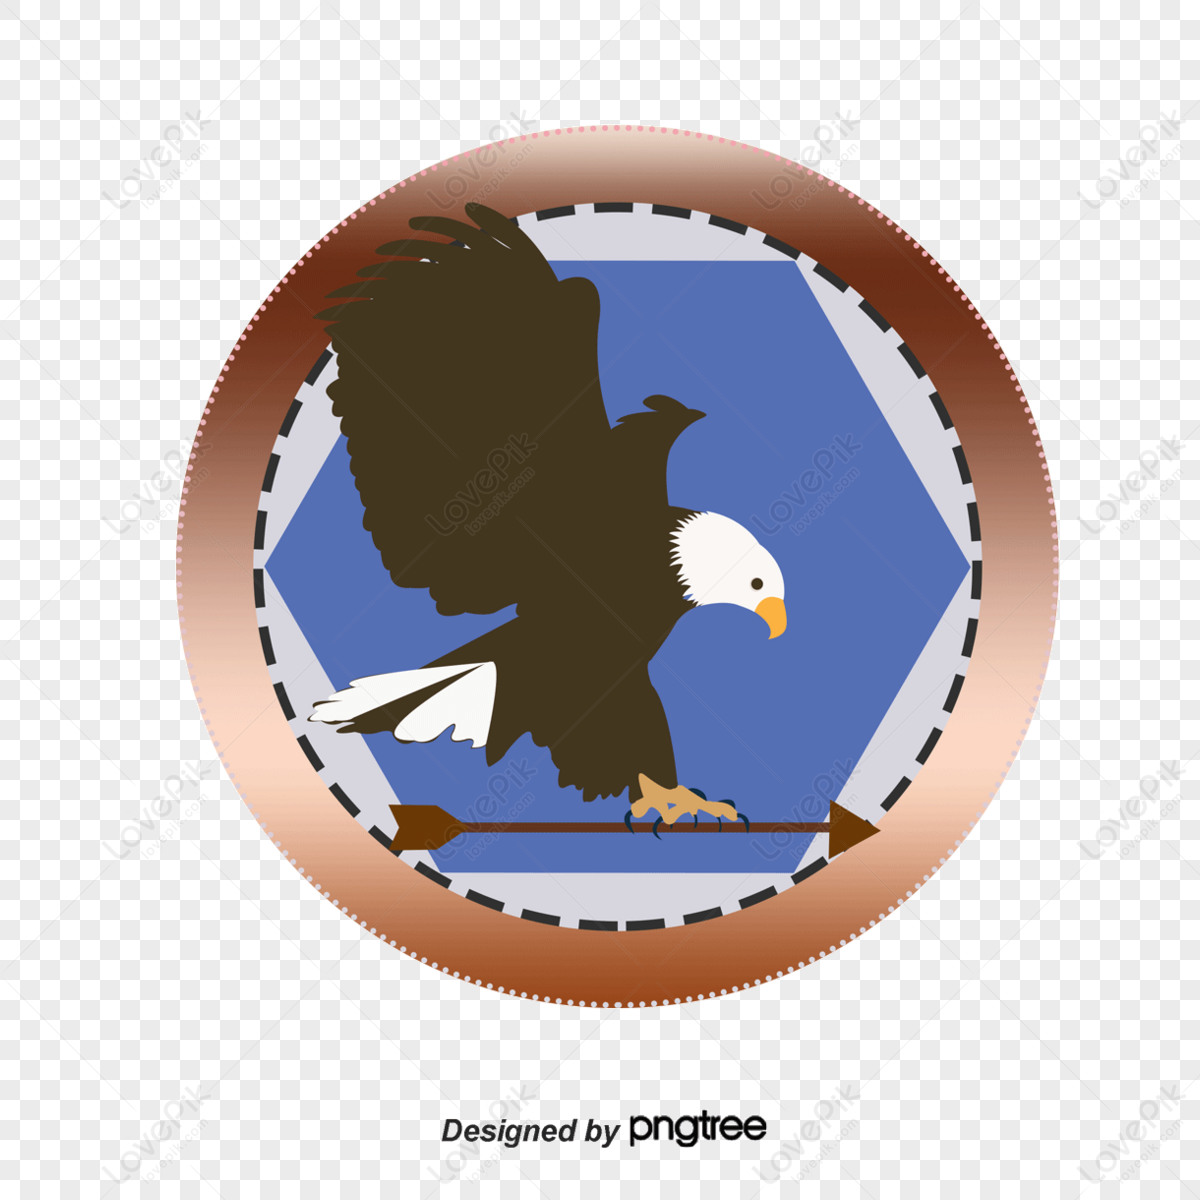 Emblem of Indonesia, representing Garuda a mythical bird… | Drouot.com